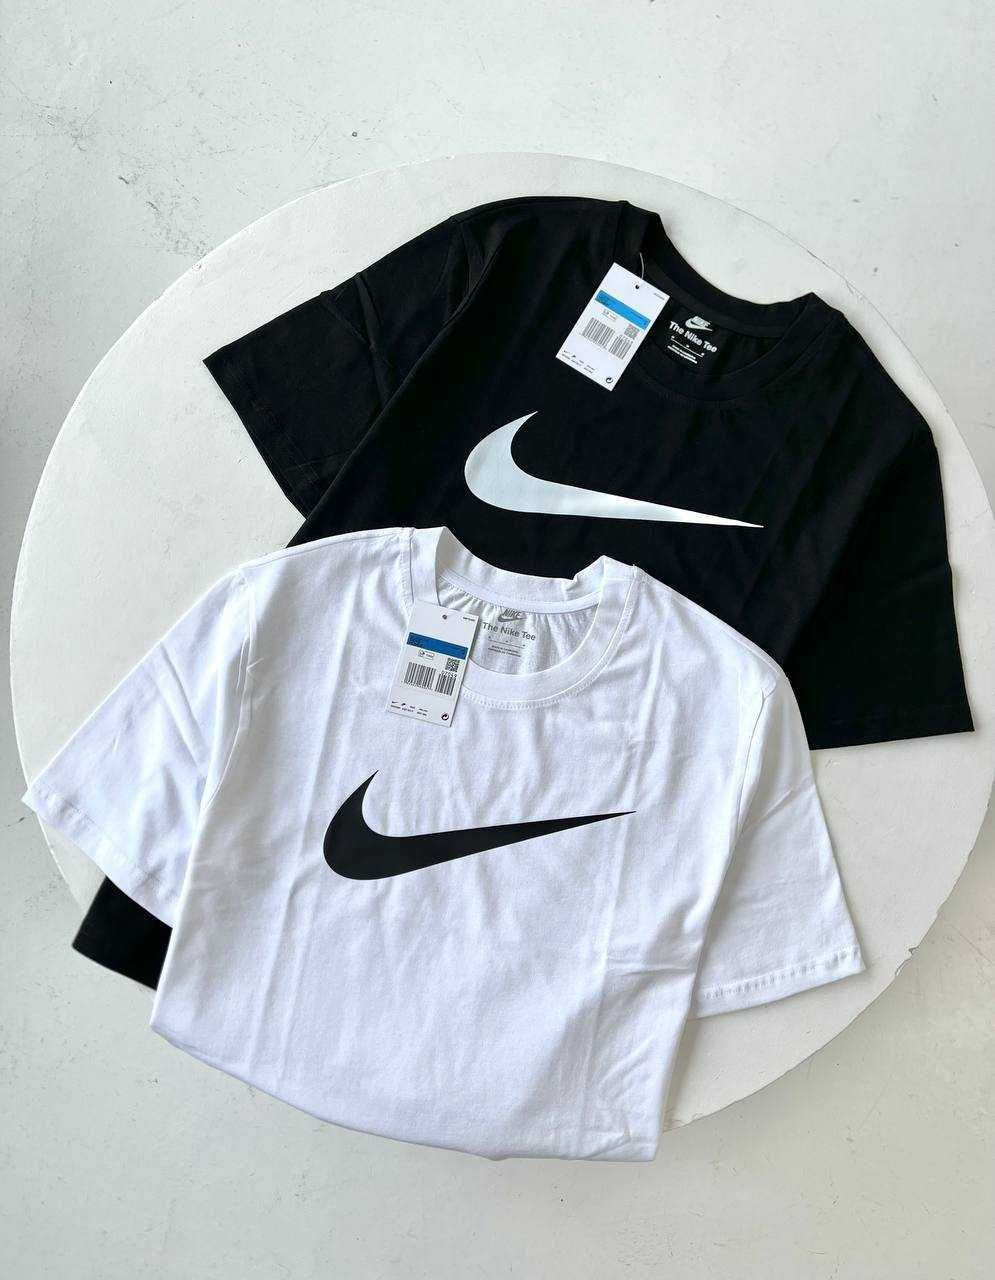 Футболка Nike белая и черная, S/M/L